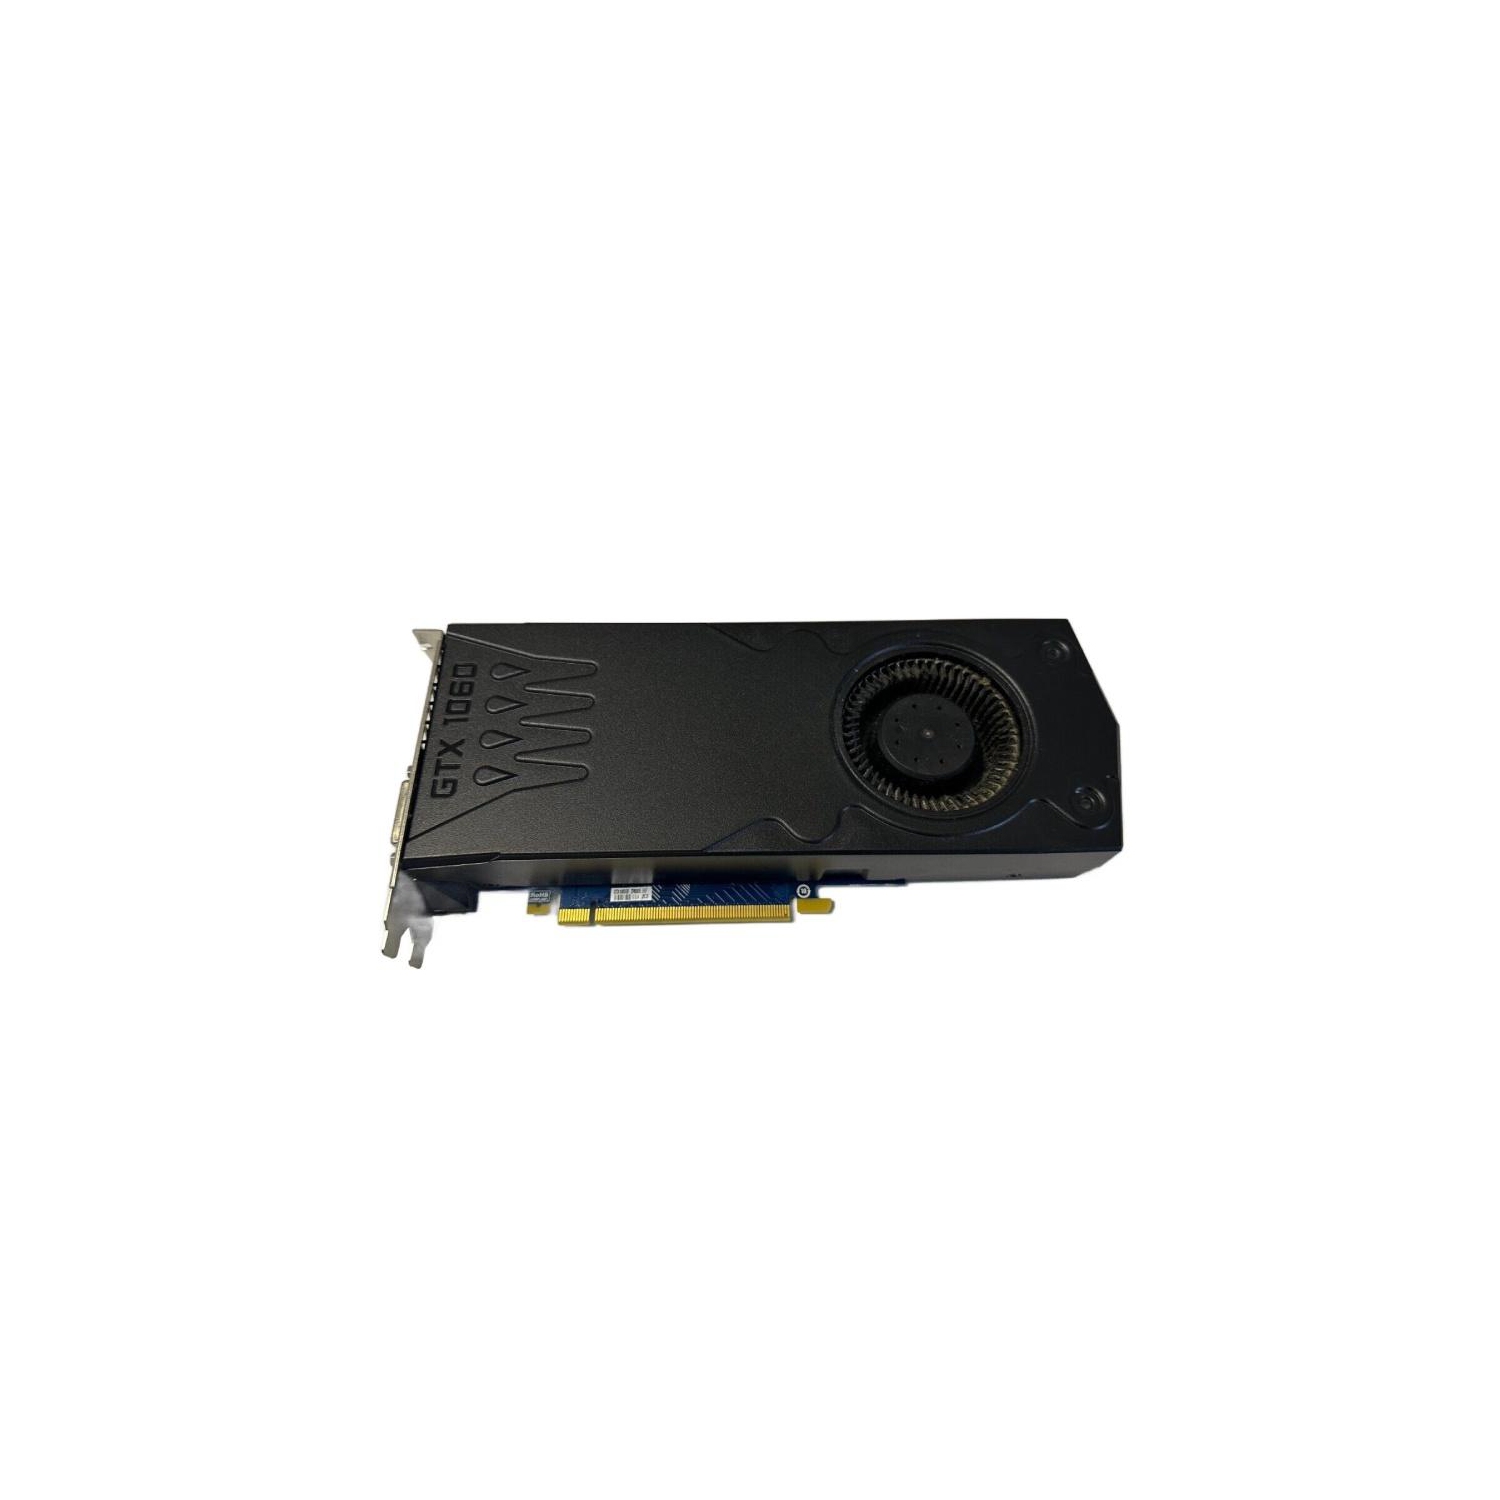 Refurbished (Good) DELL NVIDIA GEFORCE GTX 1060 3GB GDDR5 PCIE X16 3.0 HDMI DP VIDEO CARD 0CD6TT